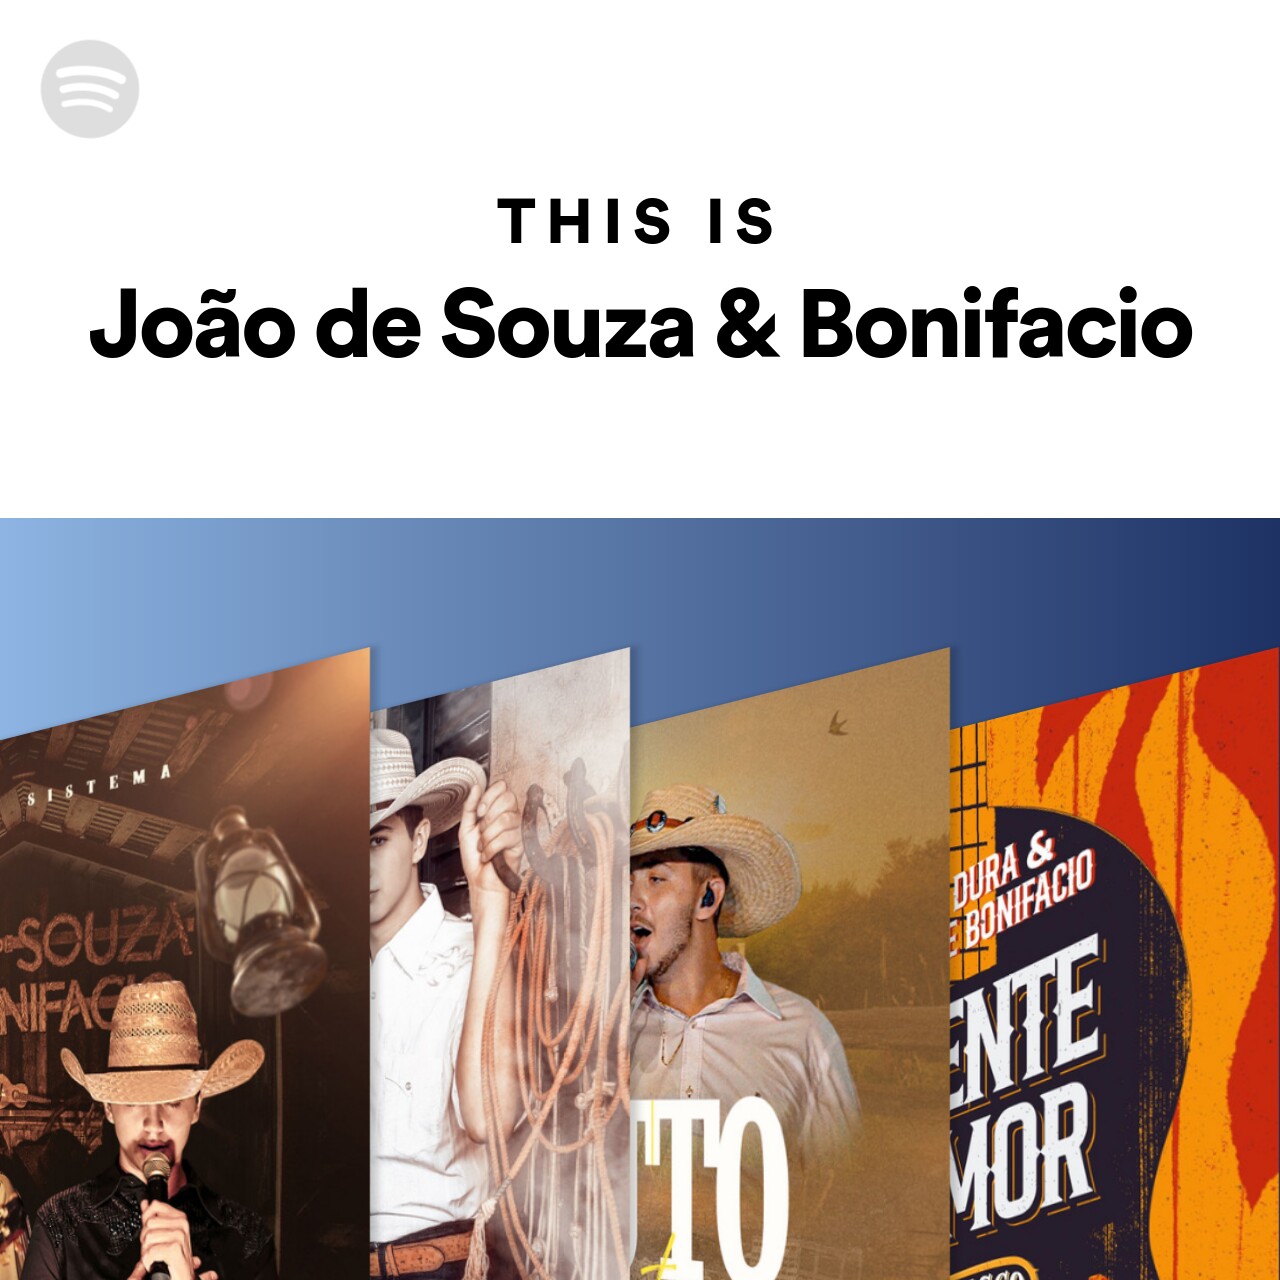 This Is João de Souza & Bonifacio